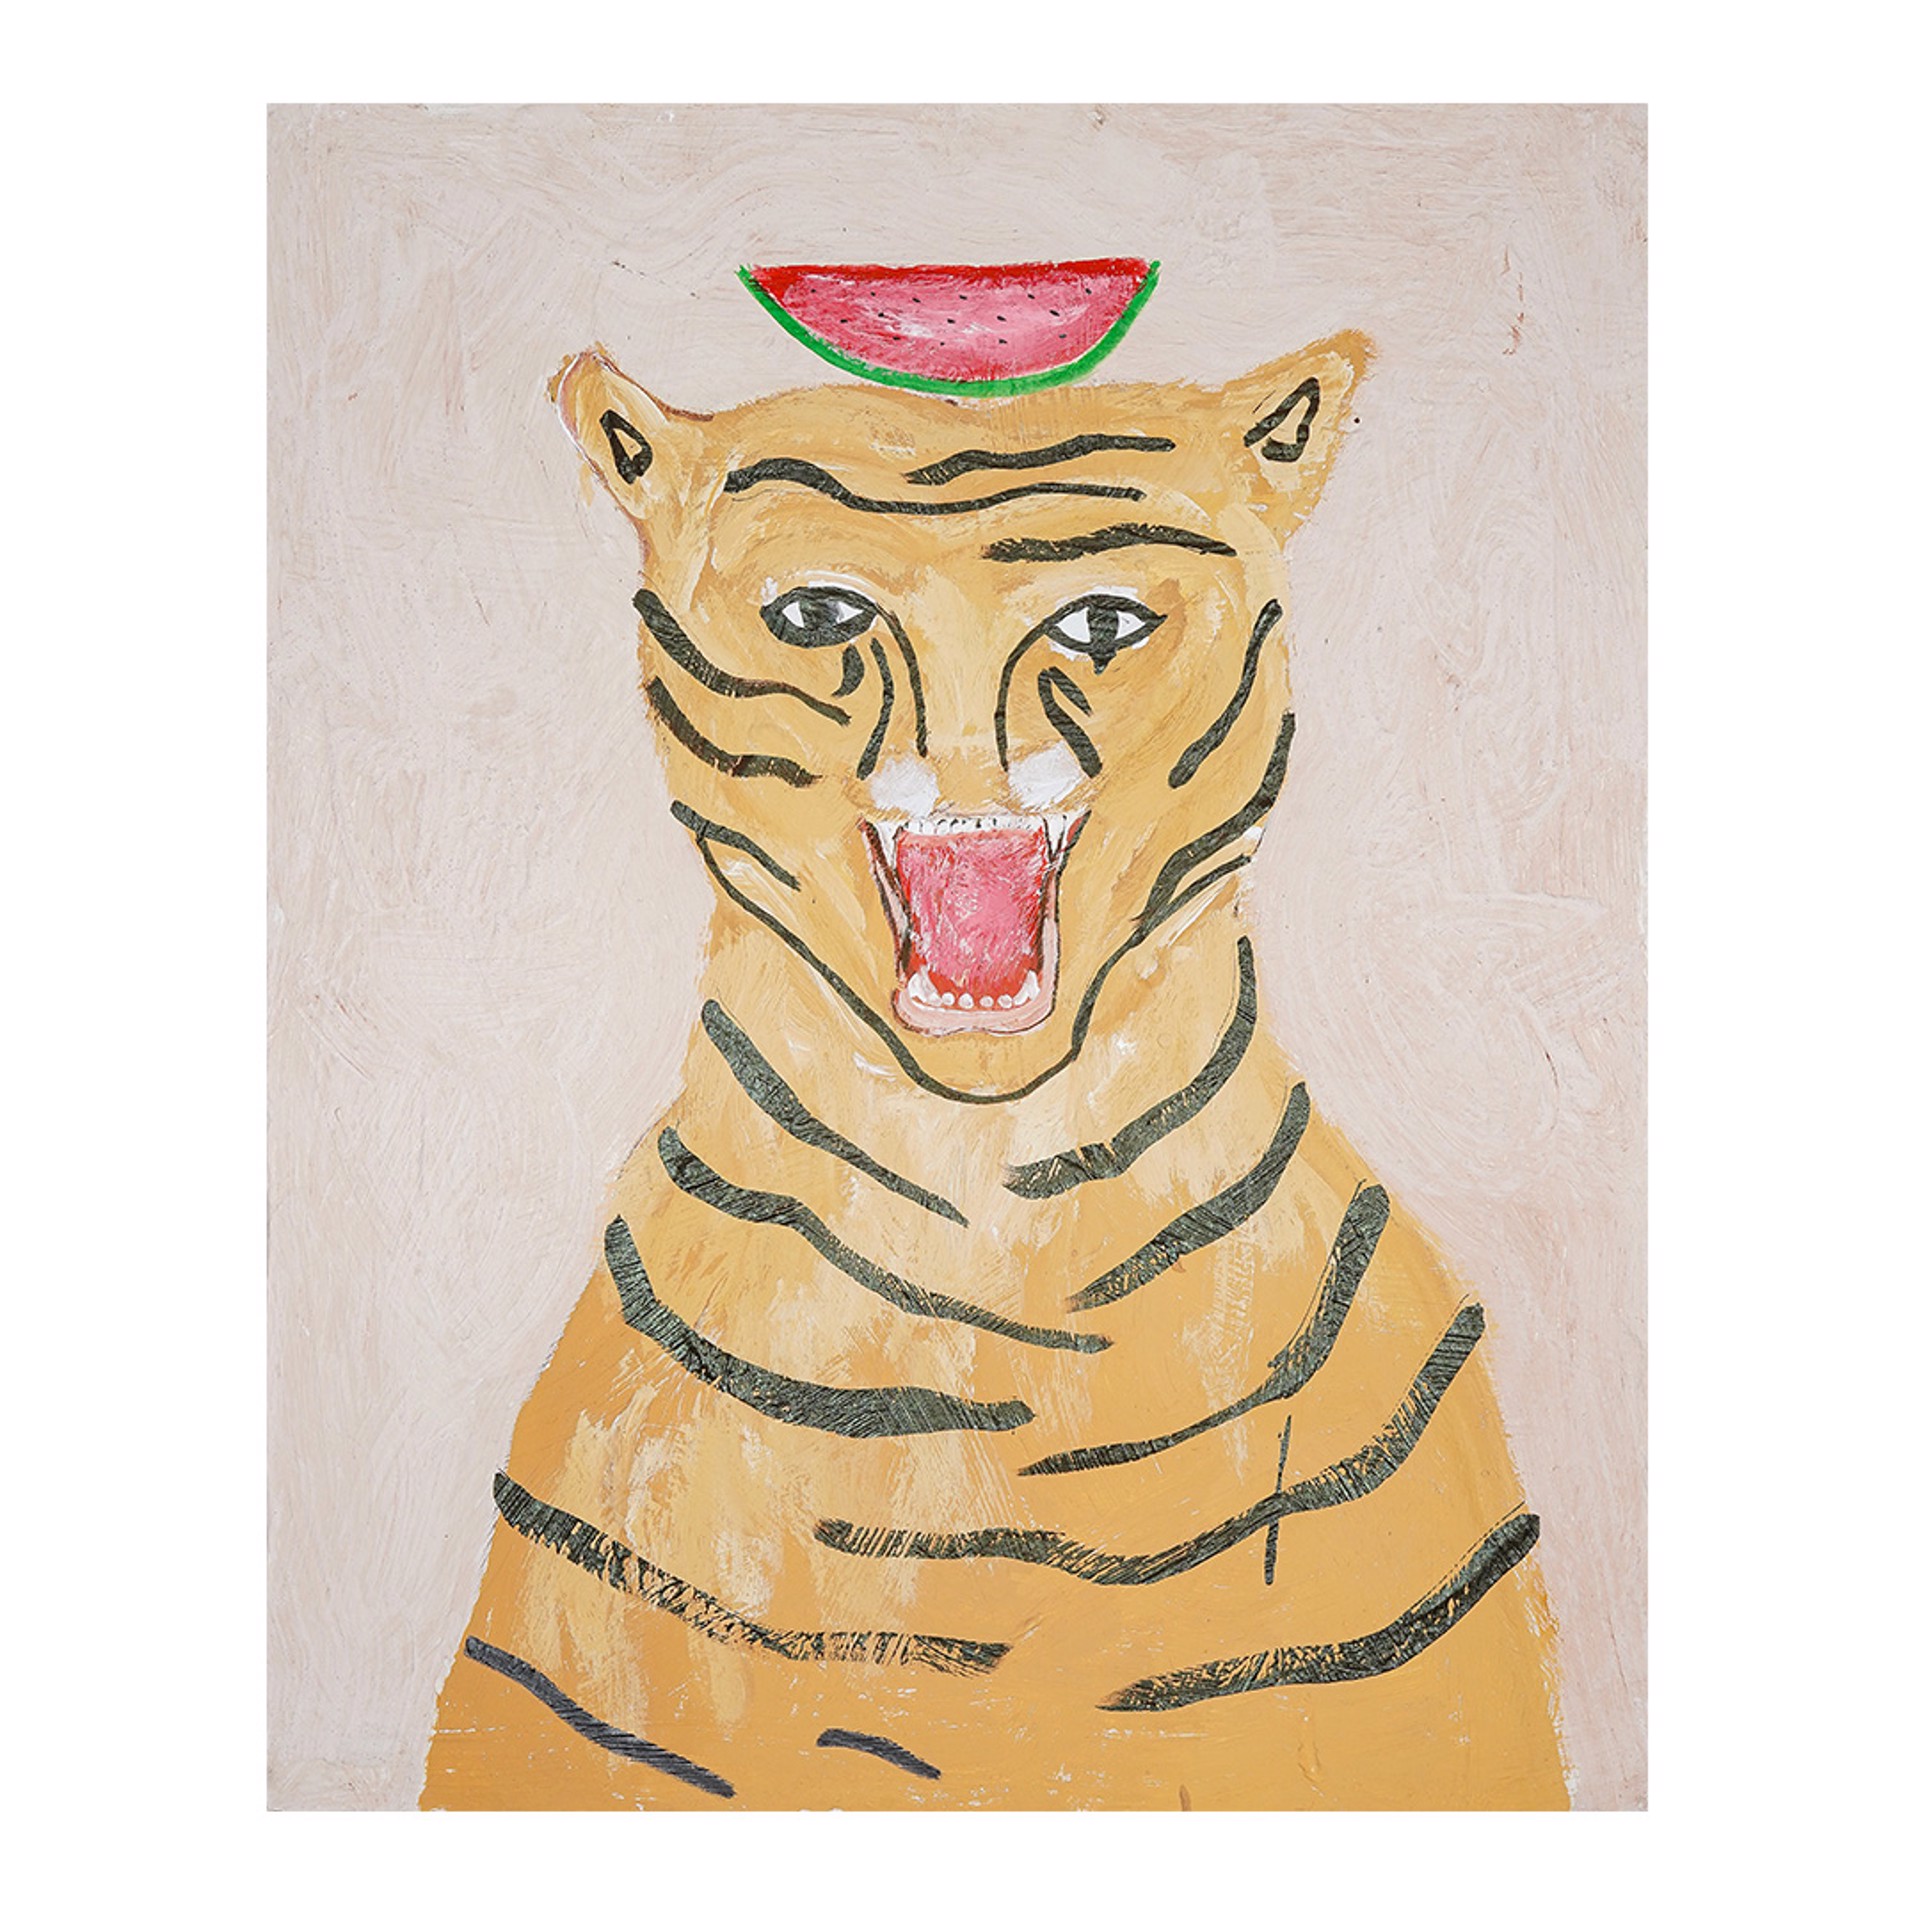 Tiger Sings Watermelon by Riz Riz Rizz